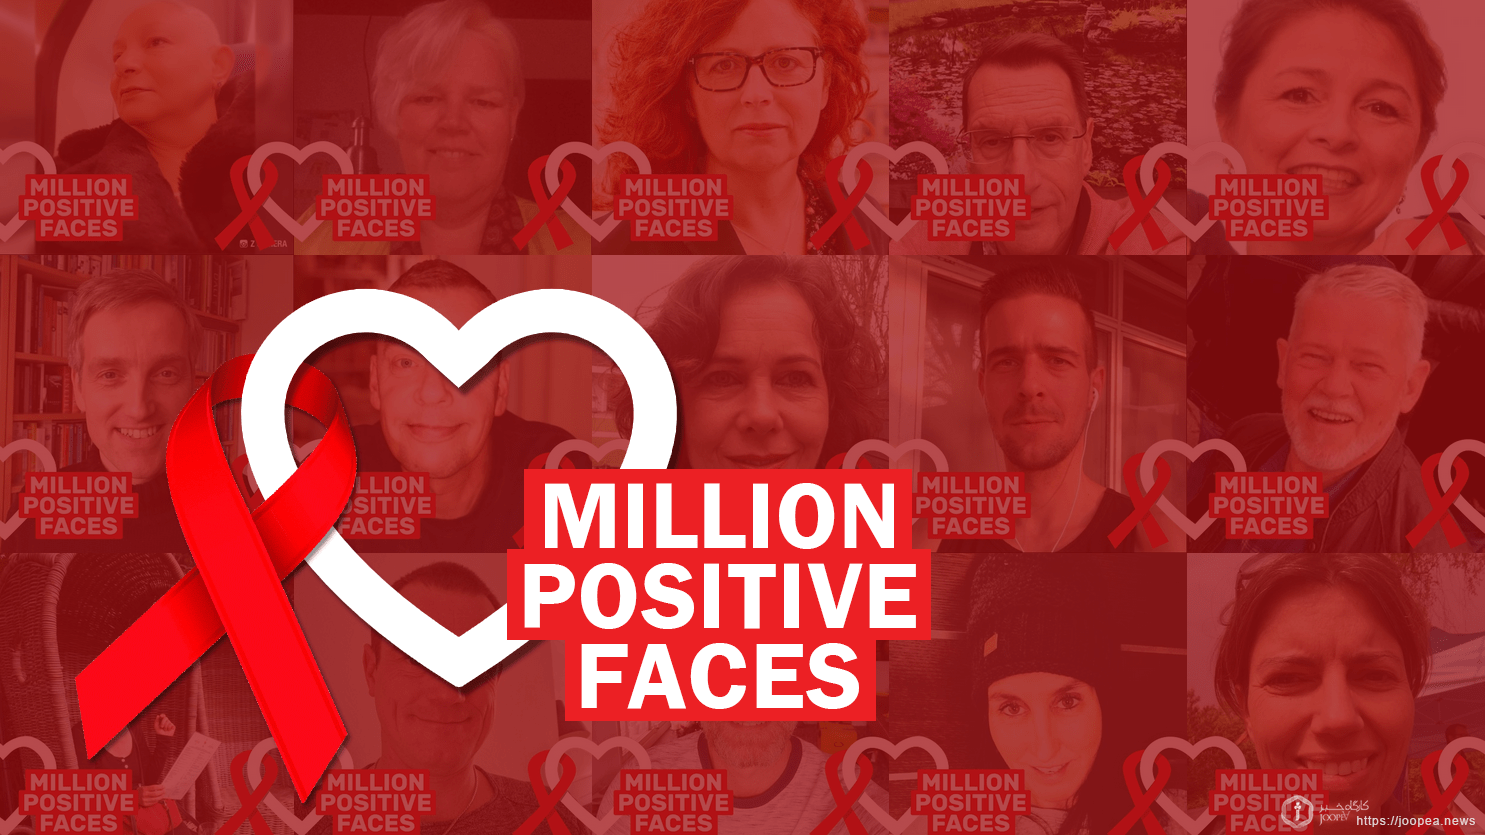 Million Positive Faces Campaign #millionpositivefaces